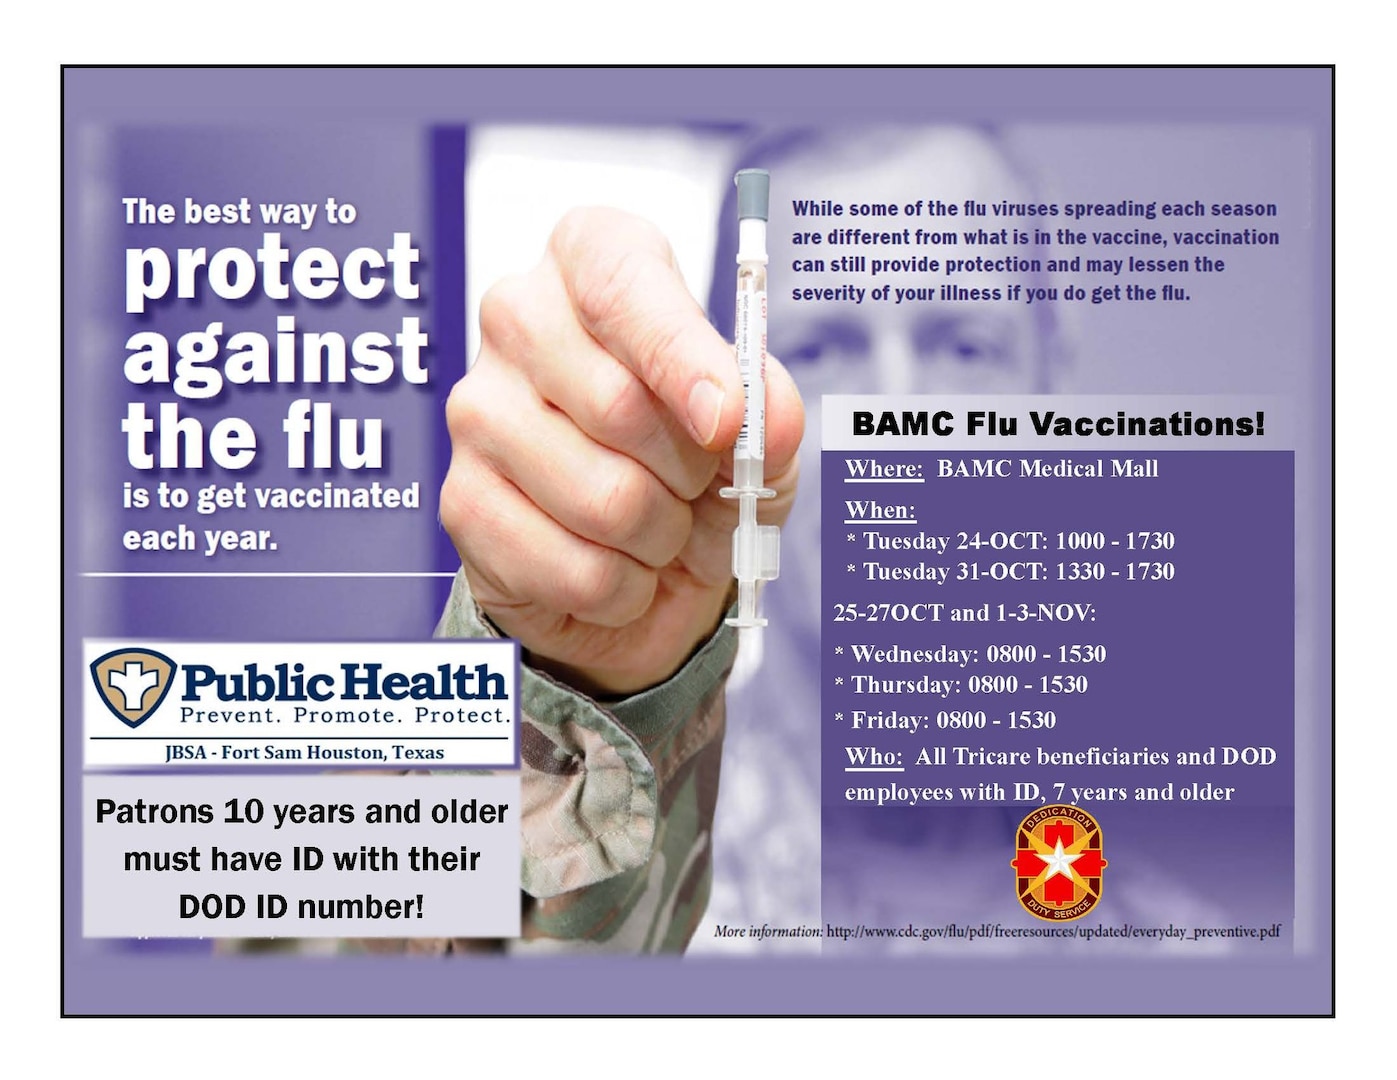 BAMC offers flu vaccinations through Nov. 3